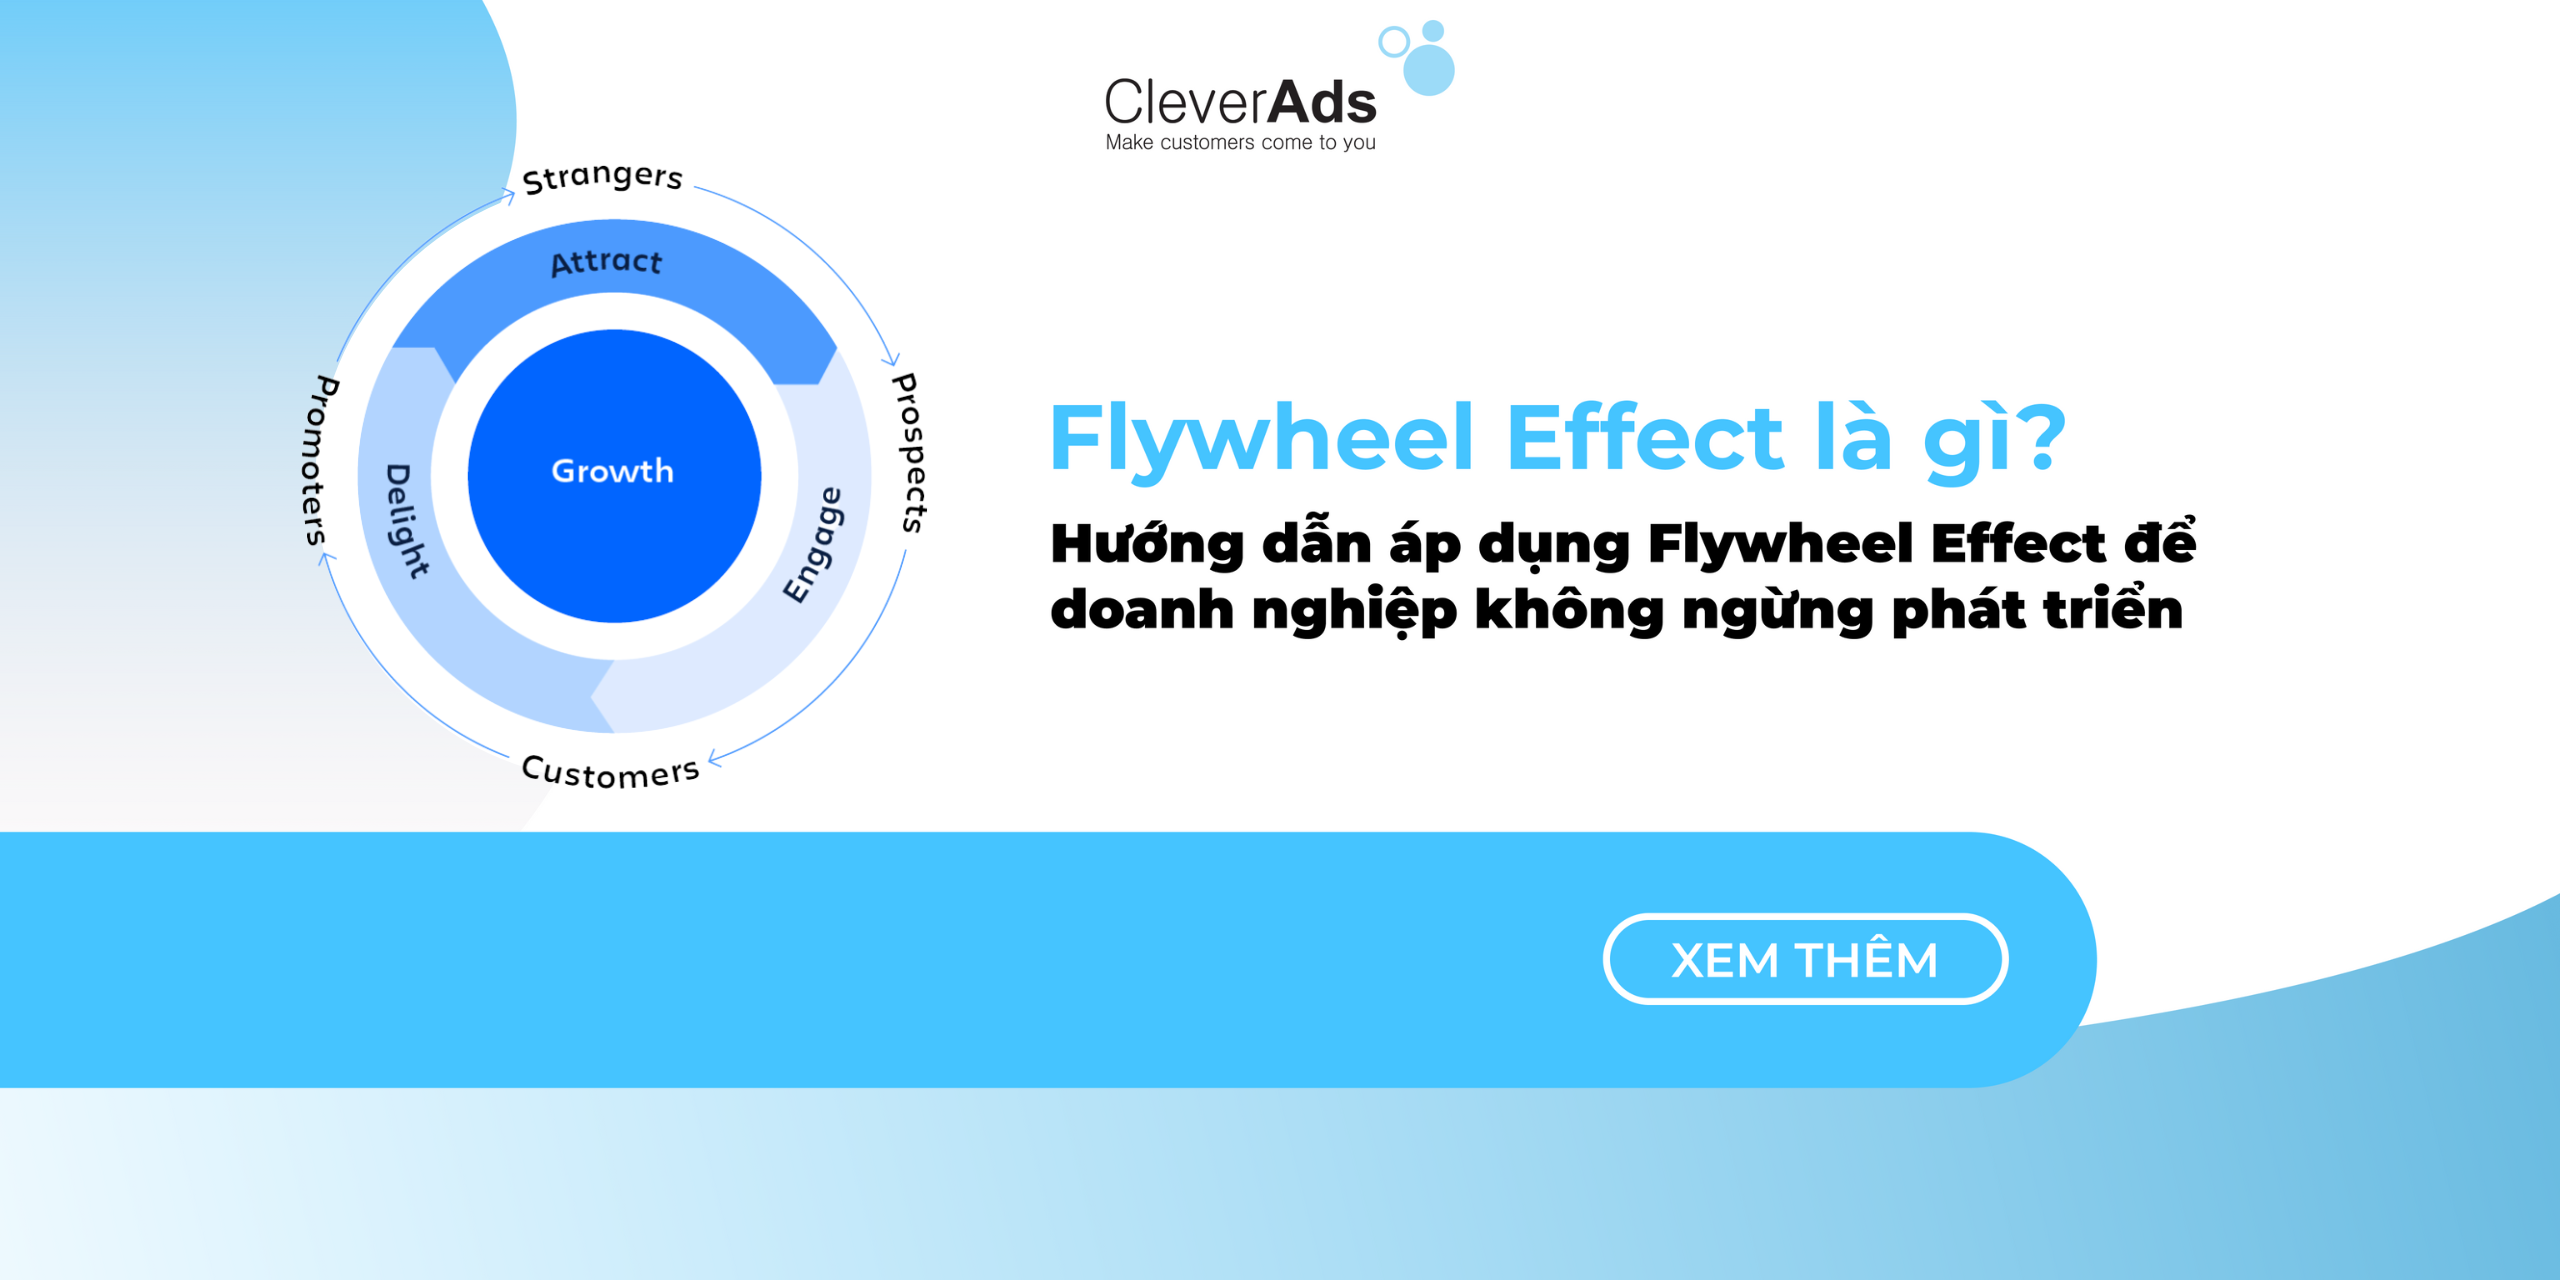 Flywheel Effect là gì? Hướng dẫn áp dụng Flywheel Effect